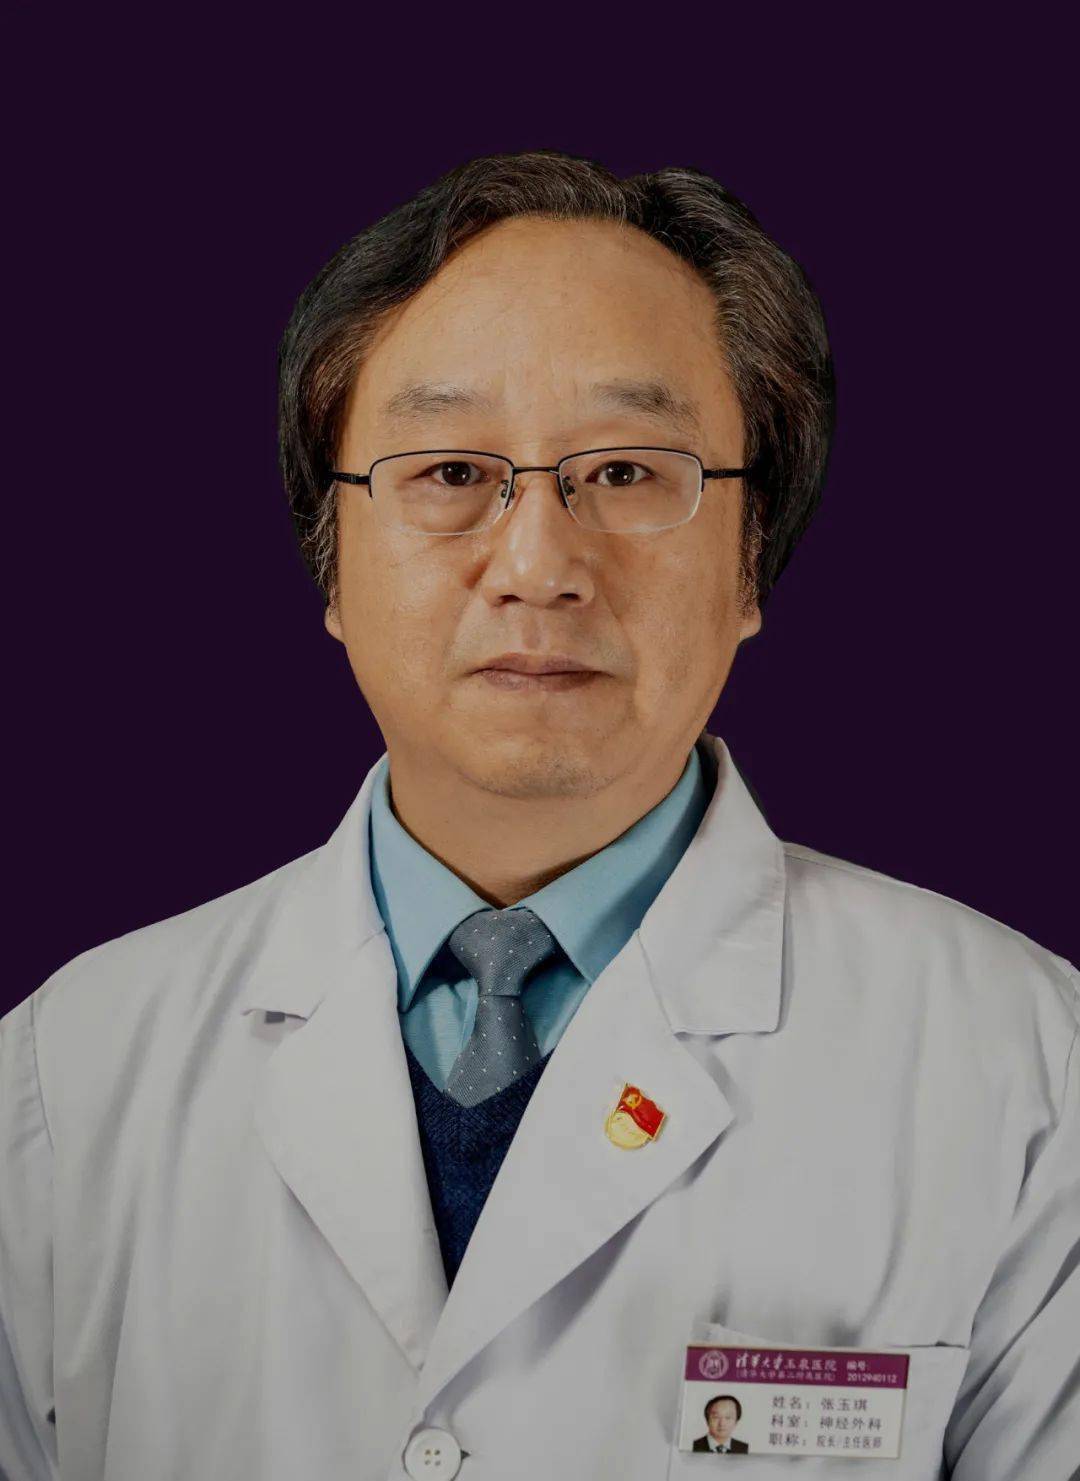 张玉琪 教授著名神经外科专家,教授,医学博士清华大学玉泉医院院长